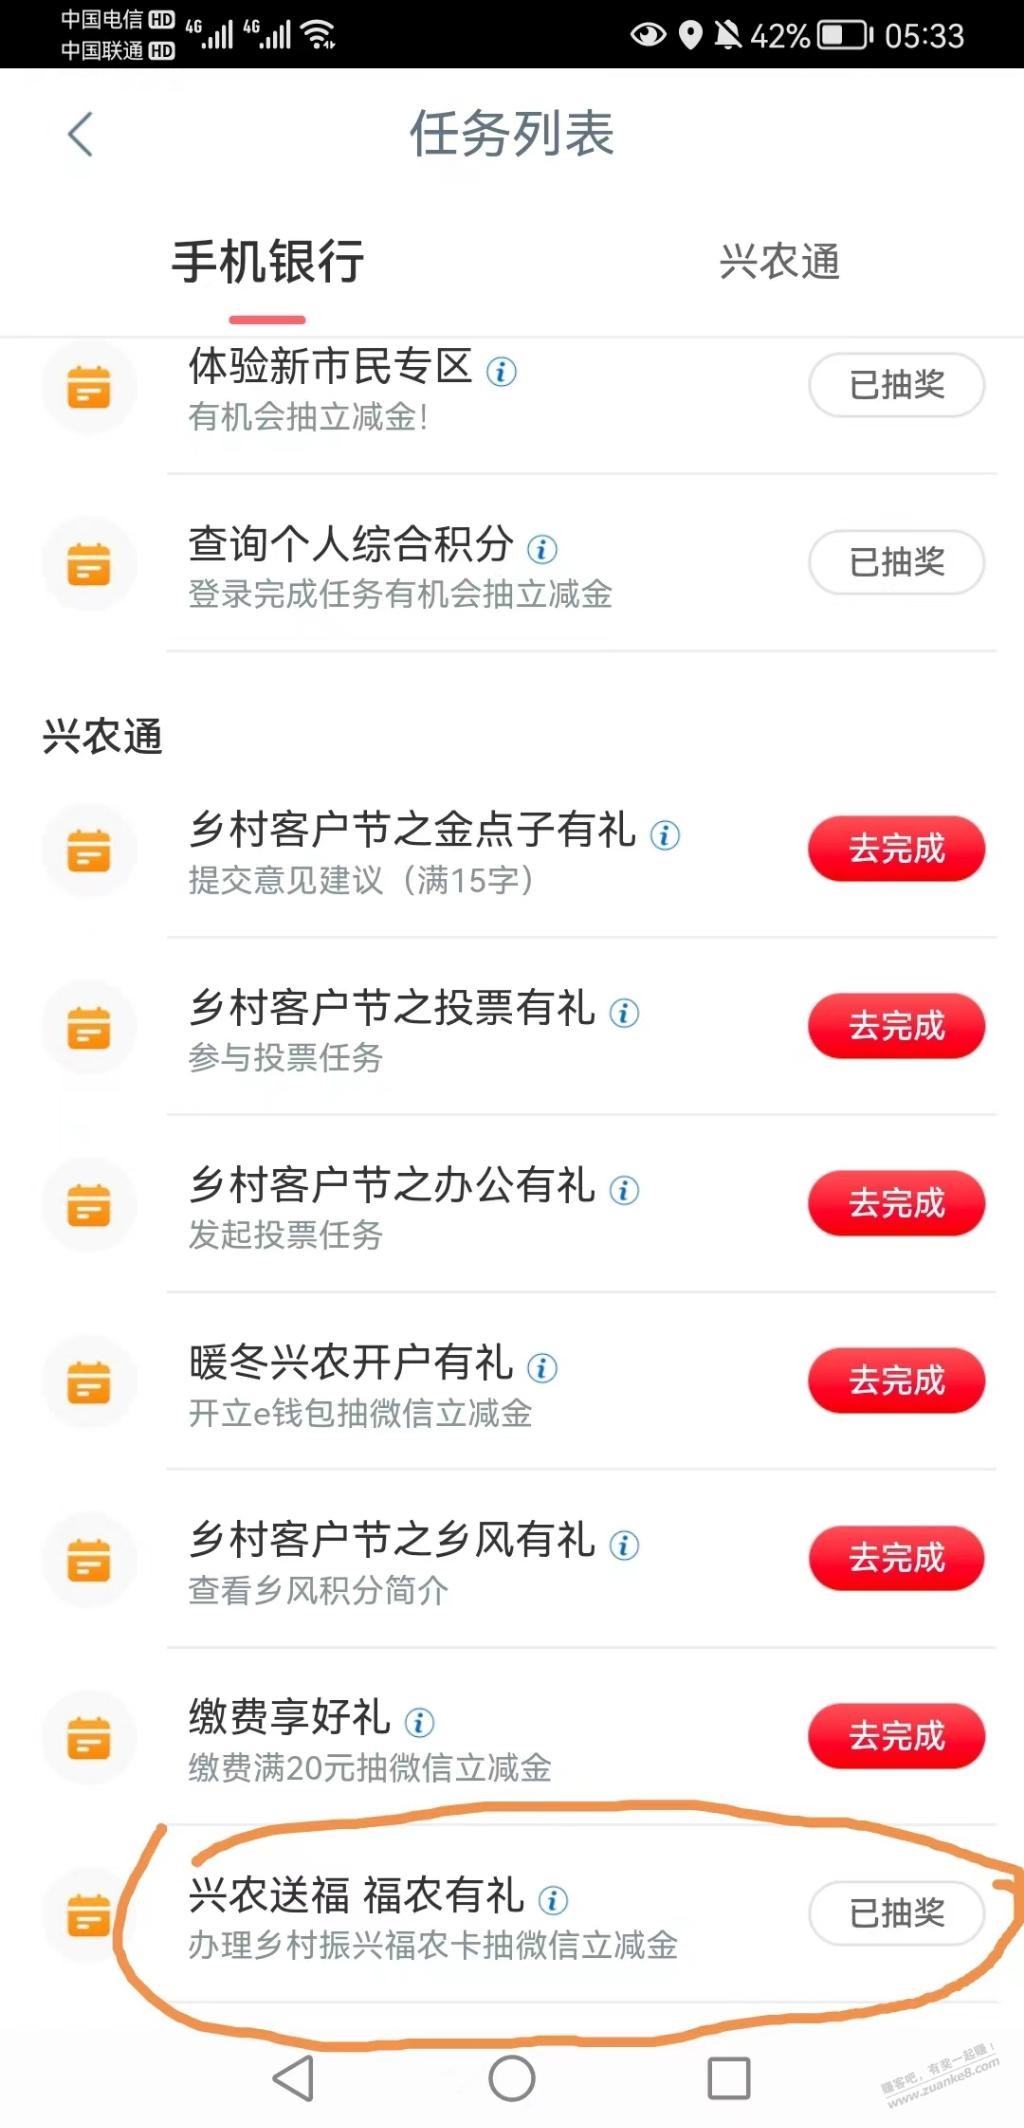 工行appV.x立减金新的-惠小助(52huixz.com)